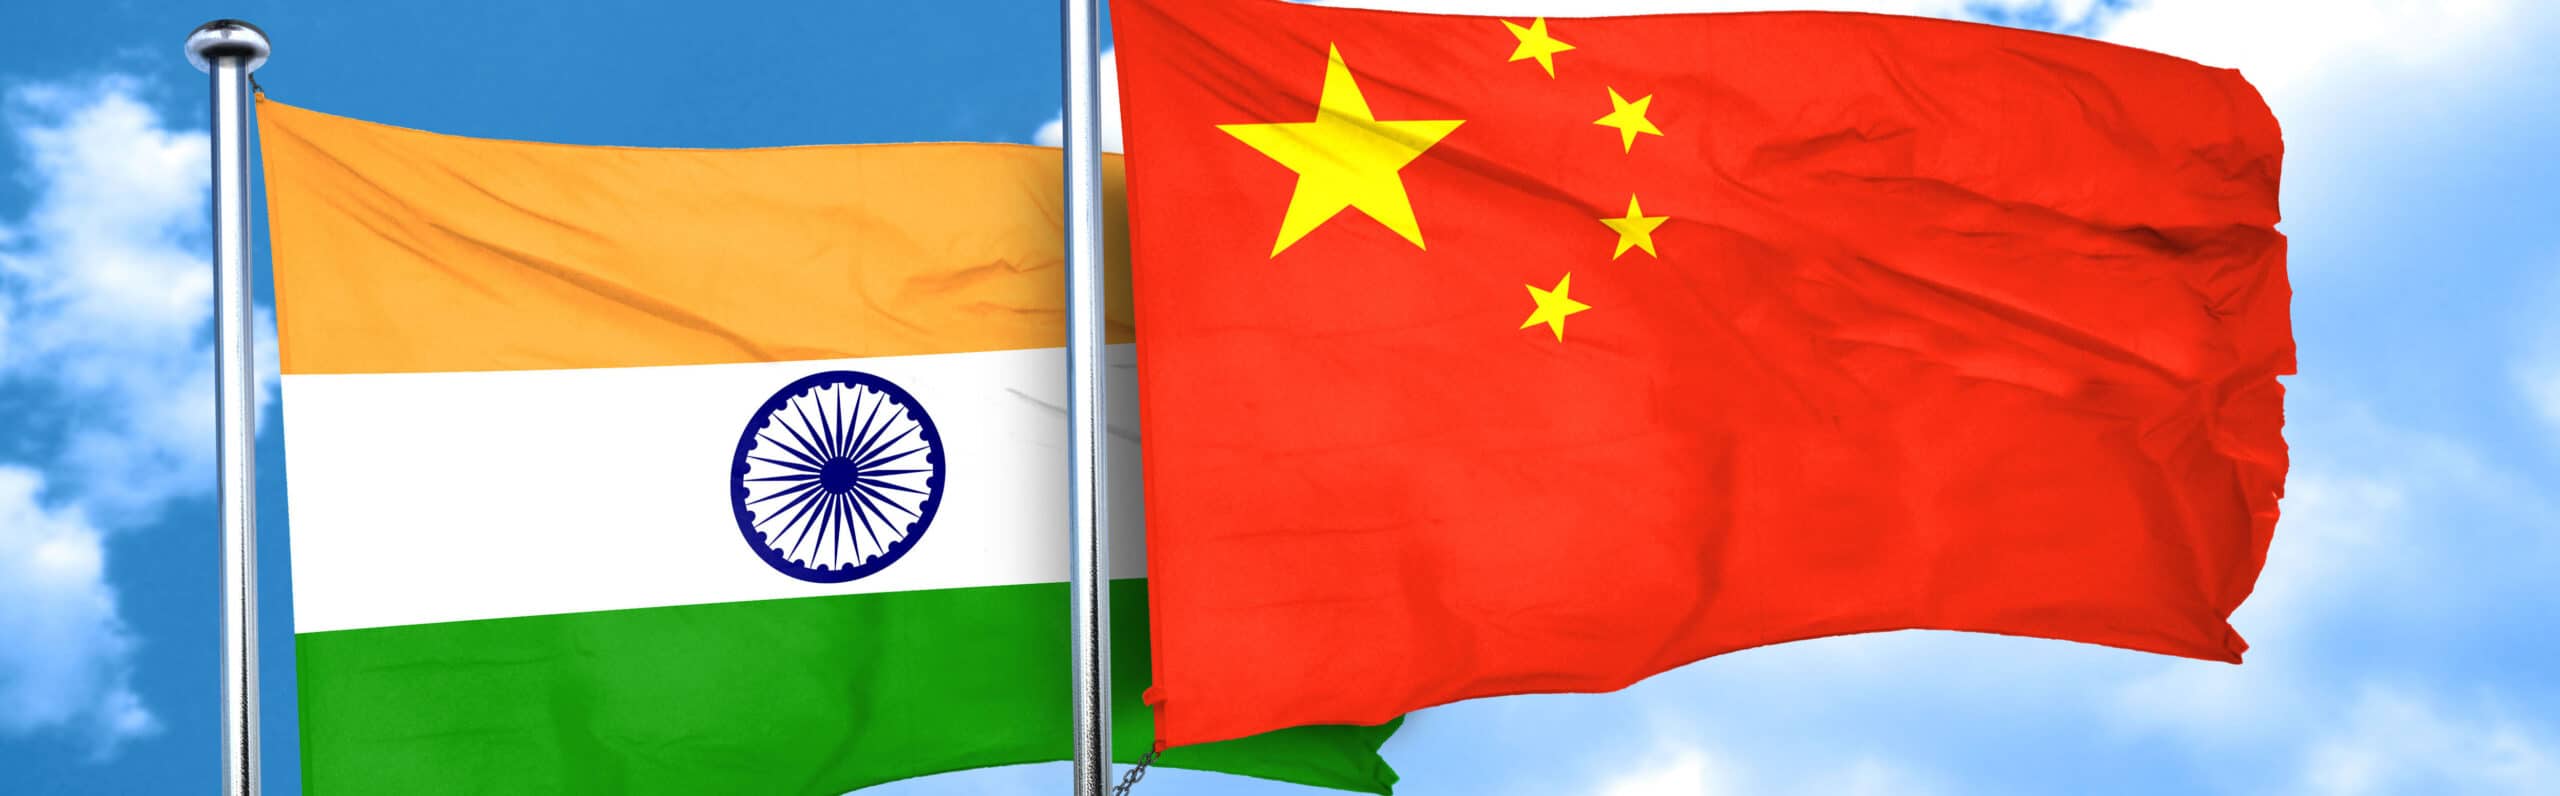 Bandeiras da Índia e da China